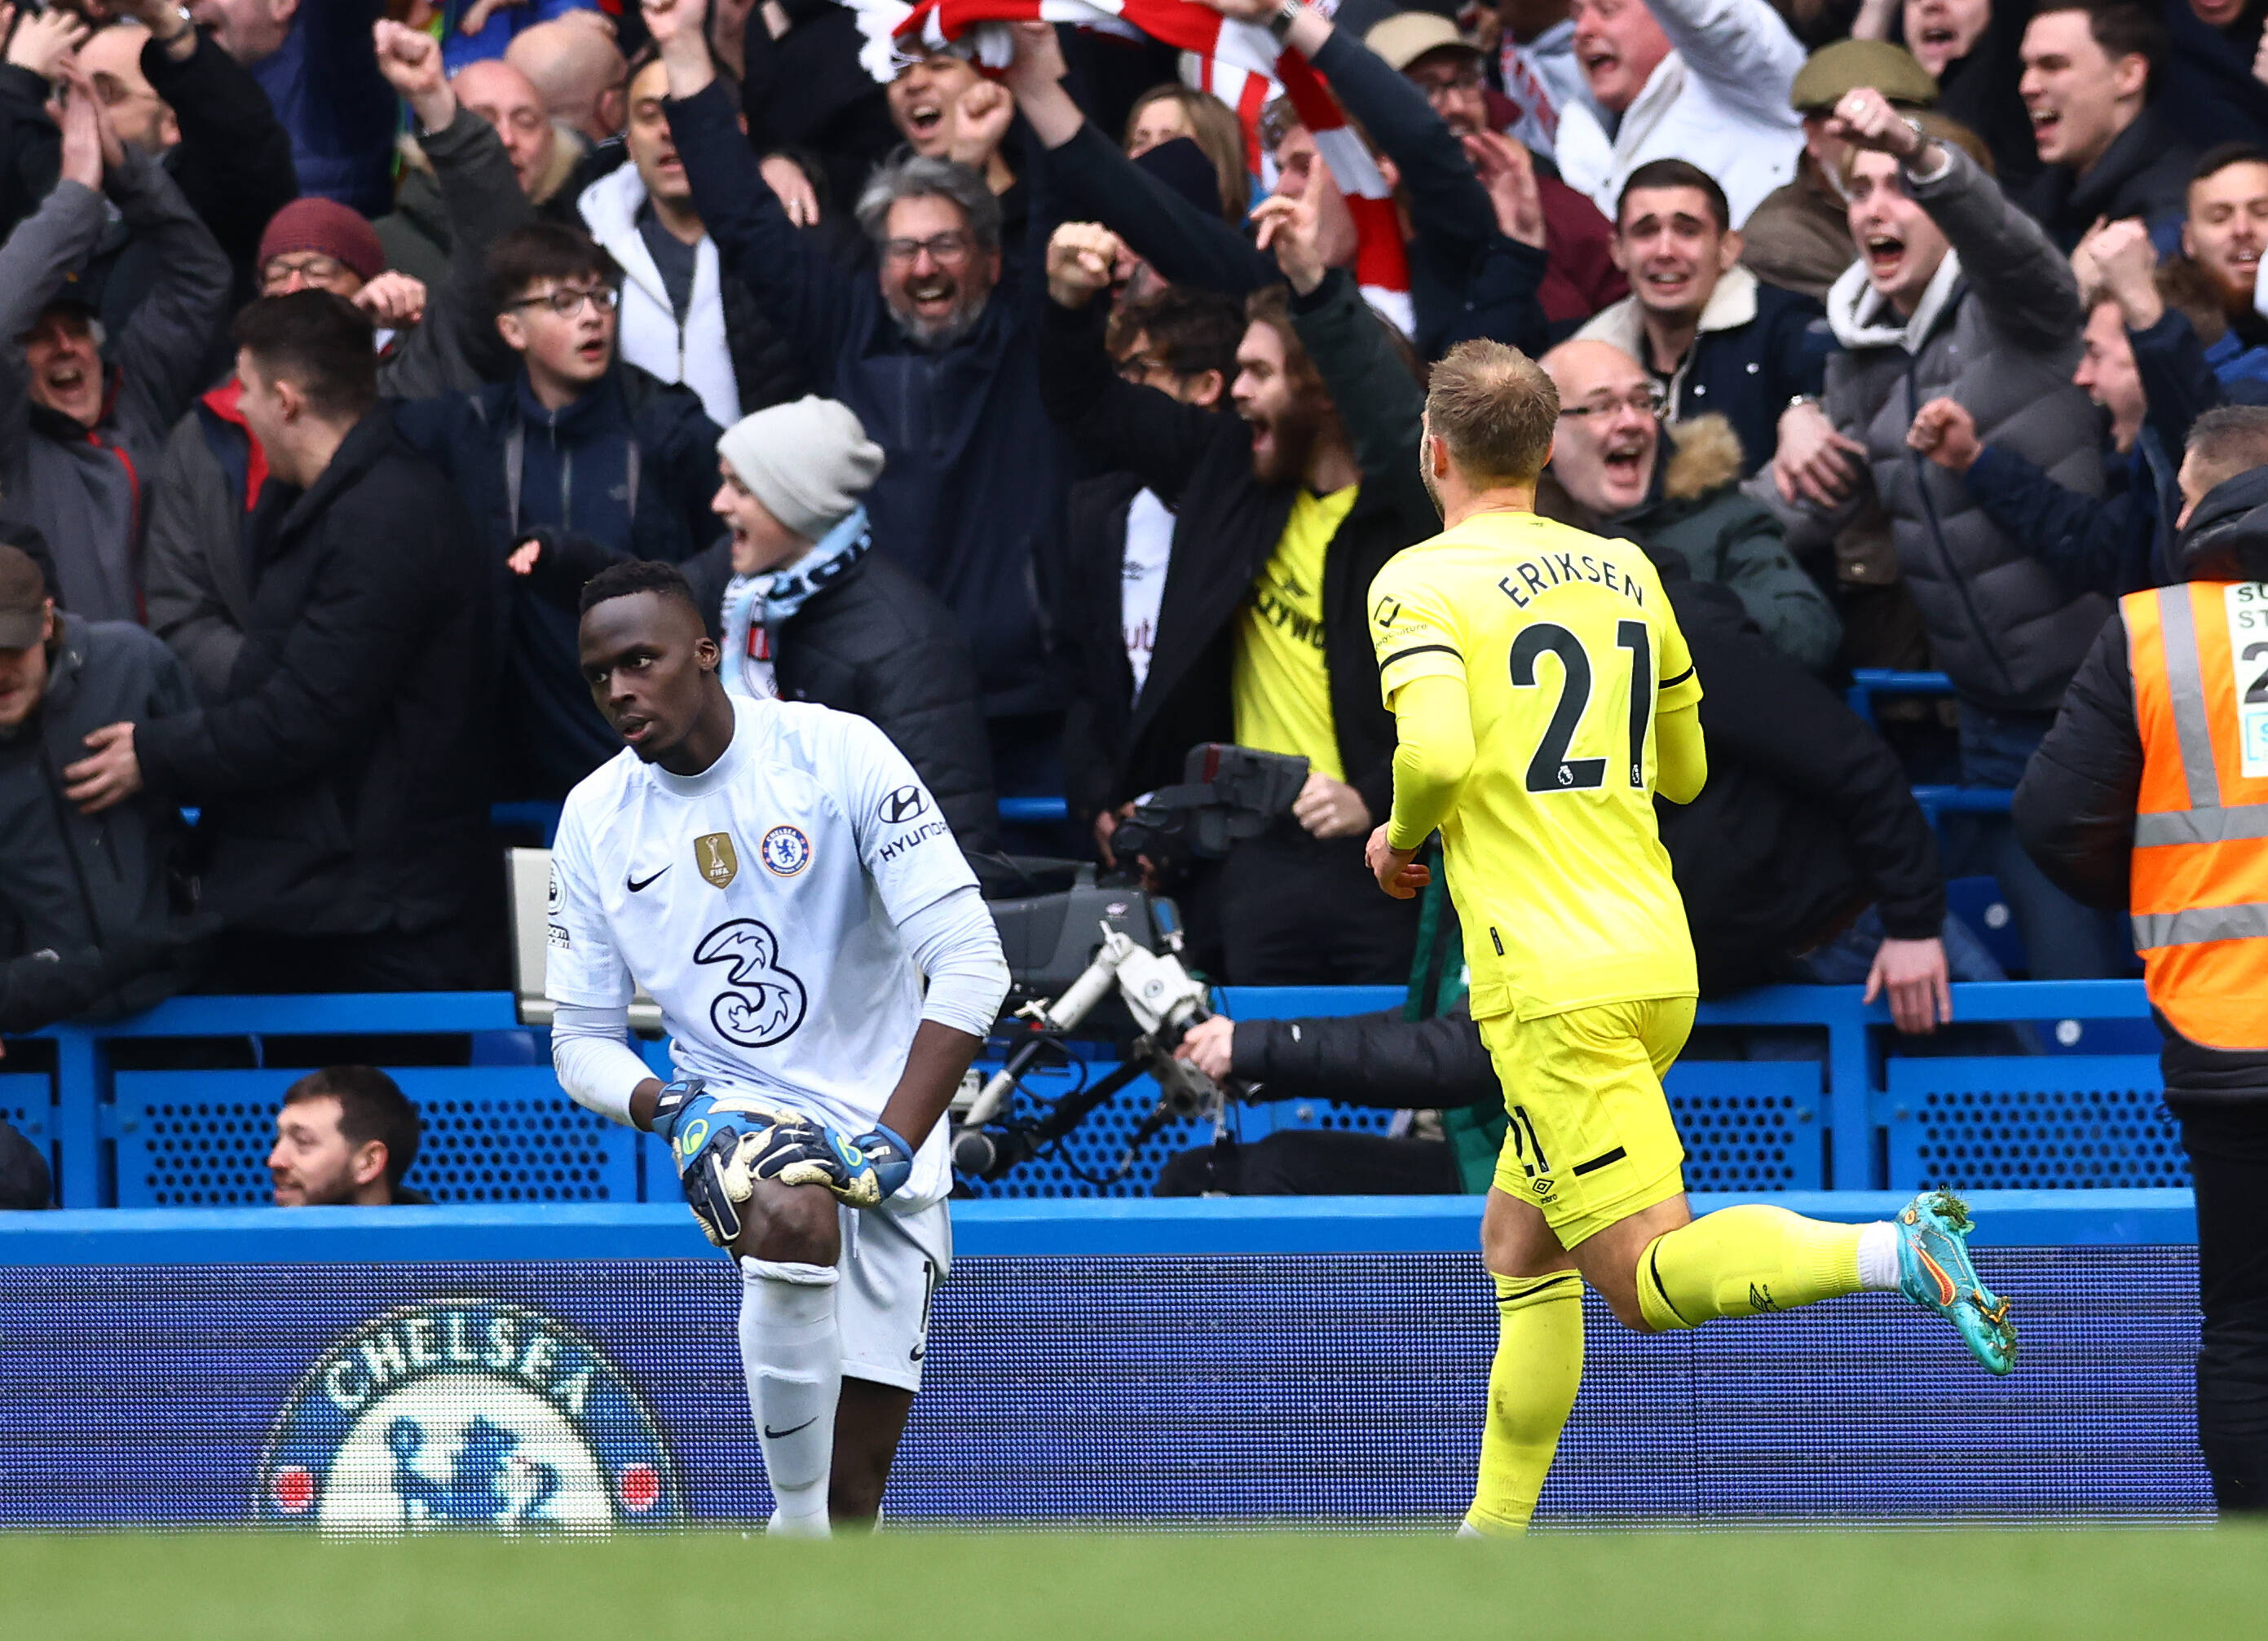 Christian Eriksen scores 1st goal for Brentford in win at Chelsea - Futbol  on FanNation